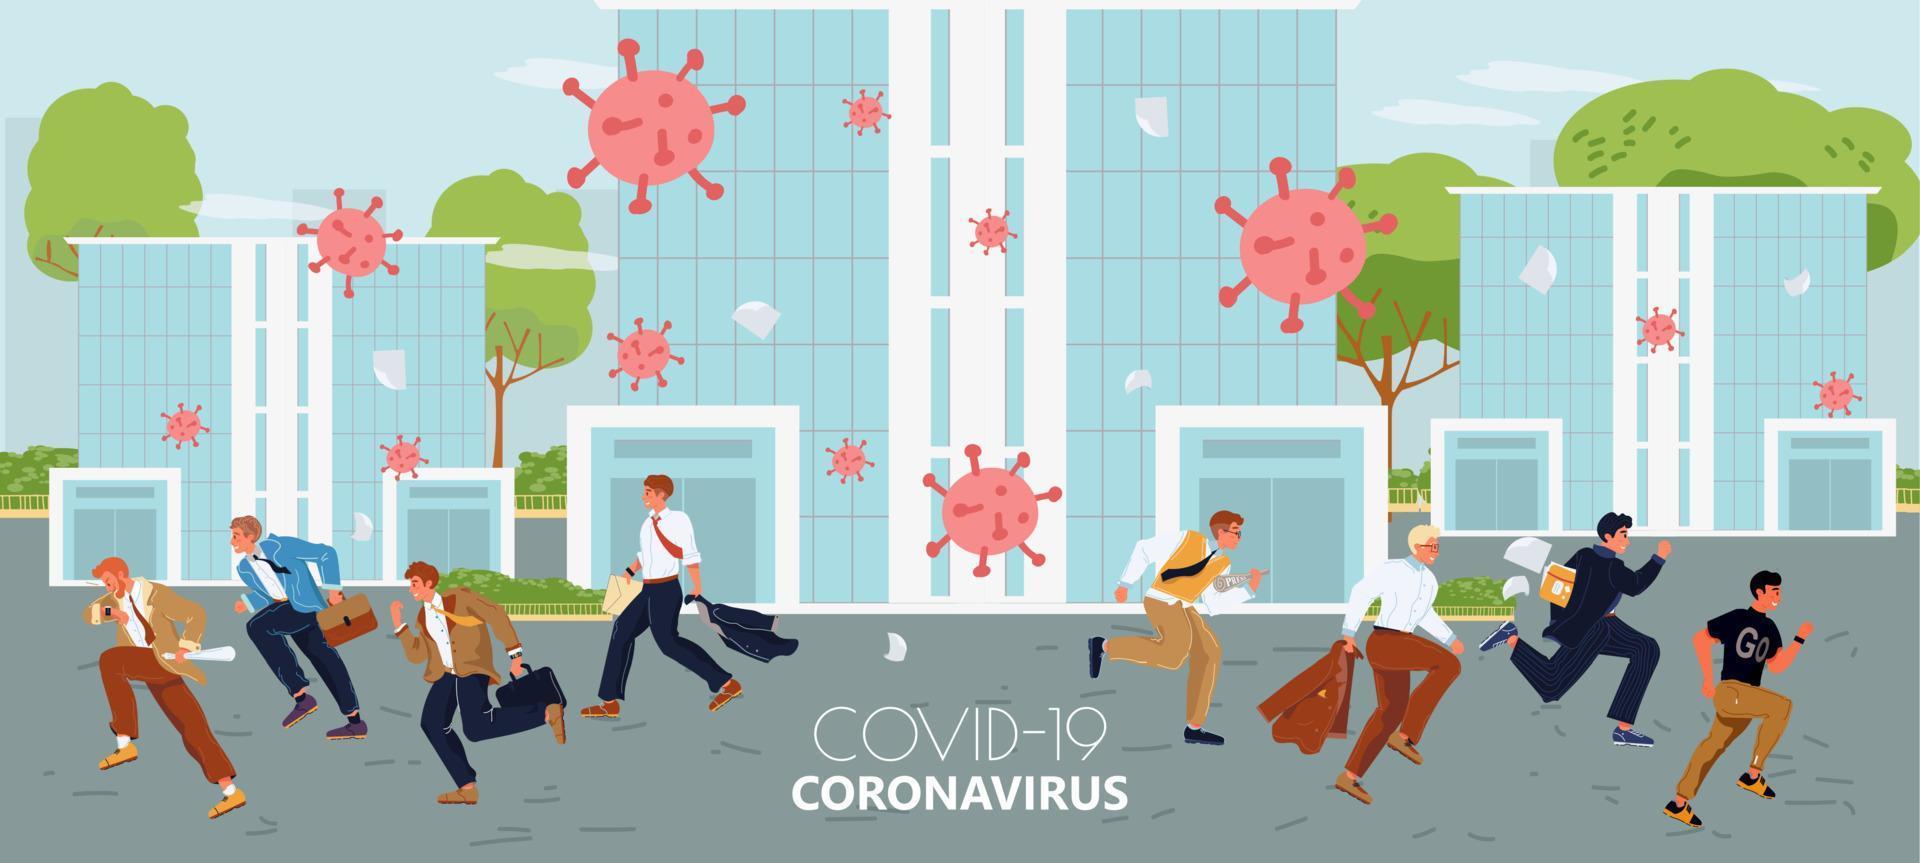 seizoen griep, coronavirus influenza pandemisch concept vector